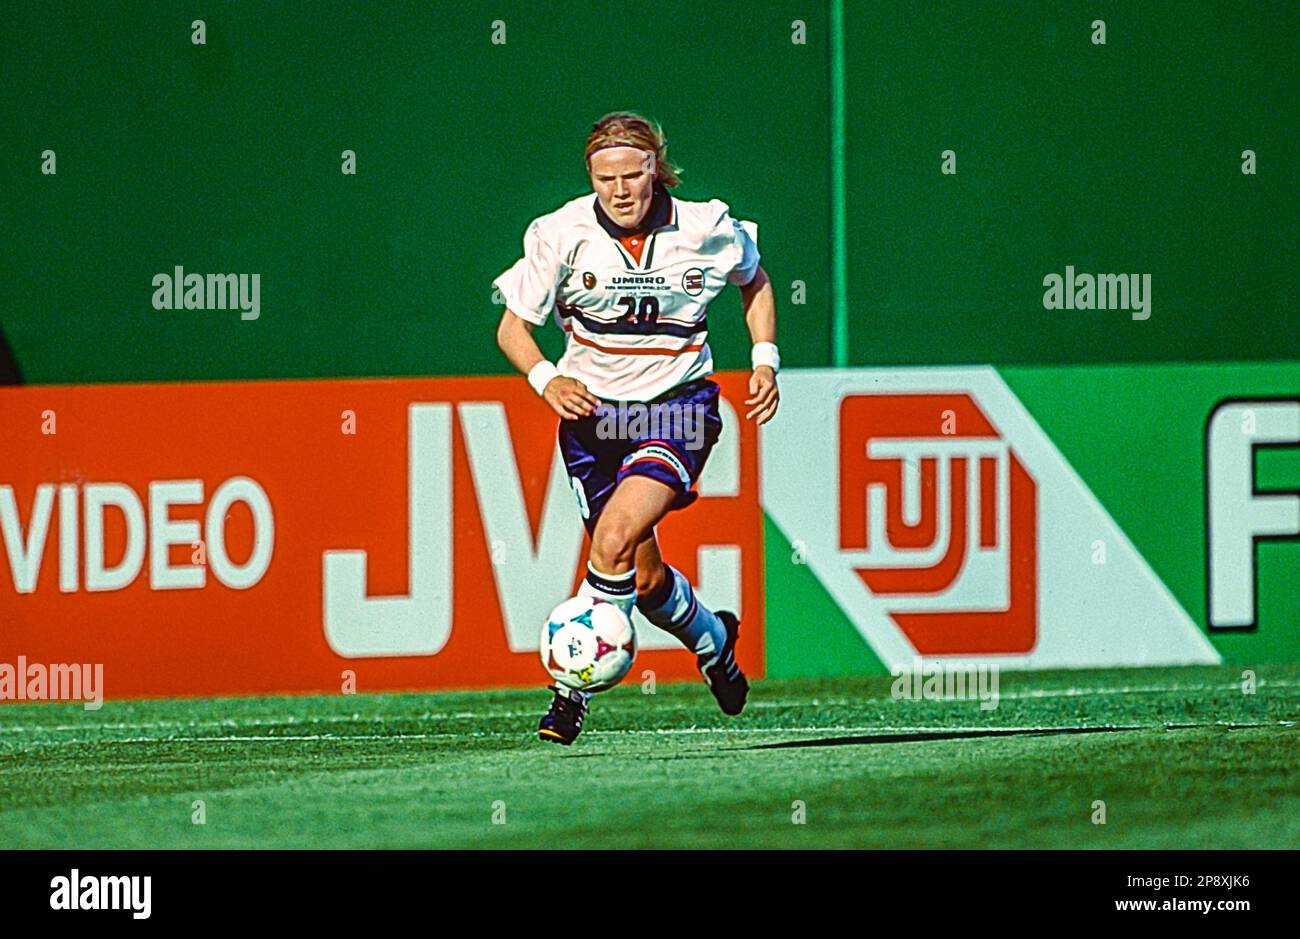 Unni Lehn (NOR) durante IL TORNEO NOR vs PUÒ partecipare alla Coppa del mondo di calcio femminile FIFA 1999. Foto Stock